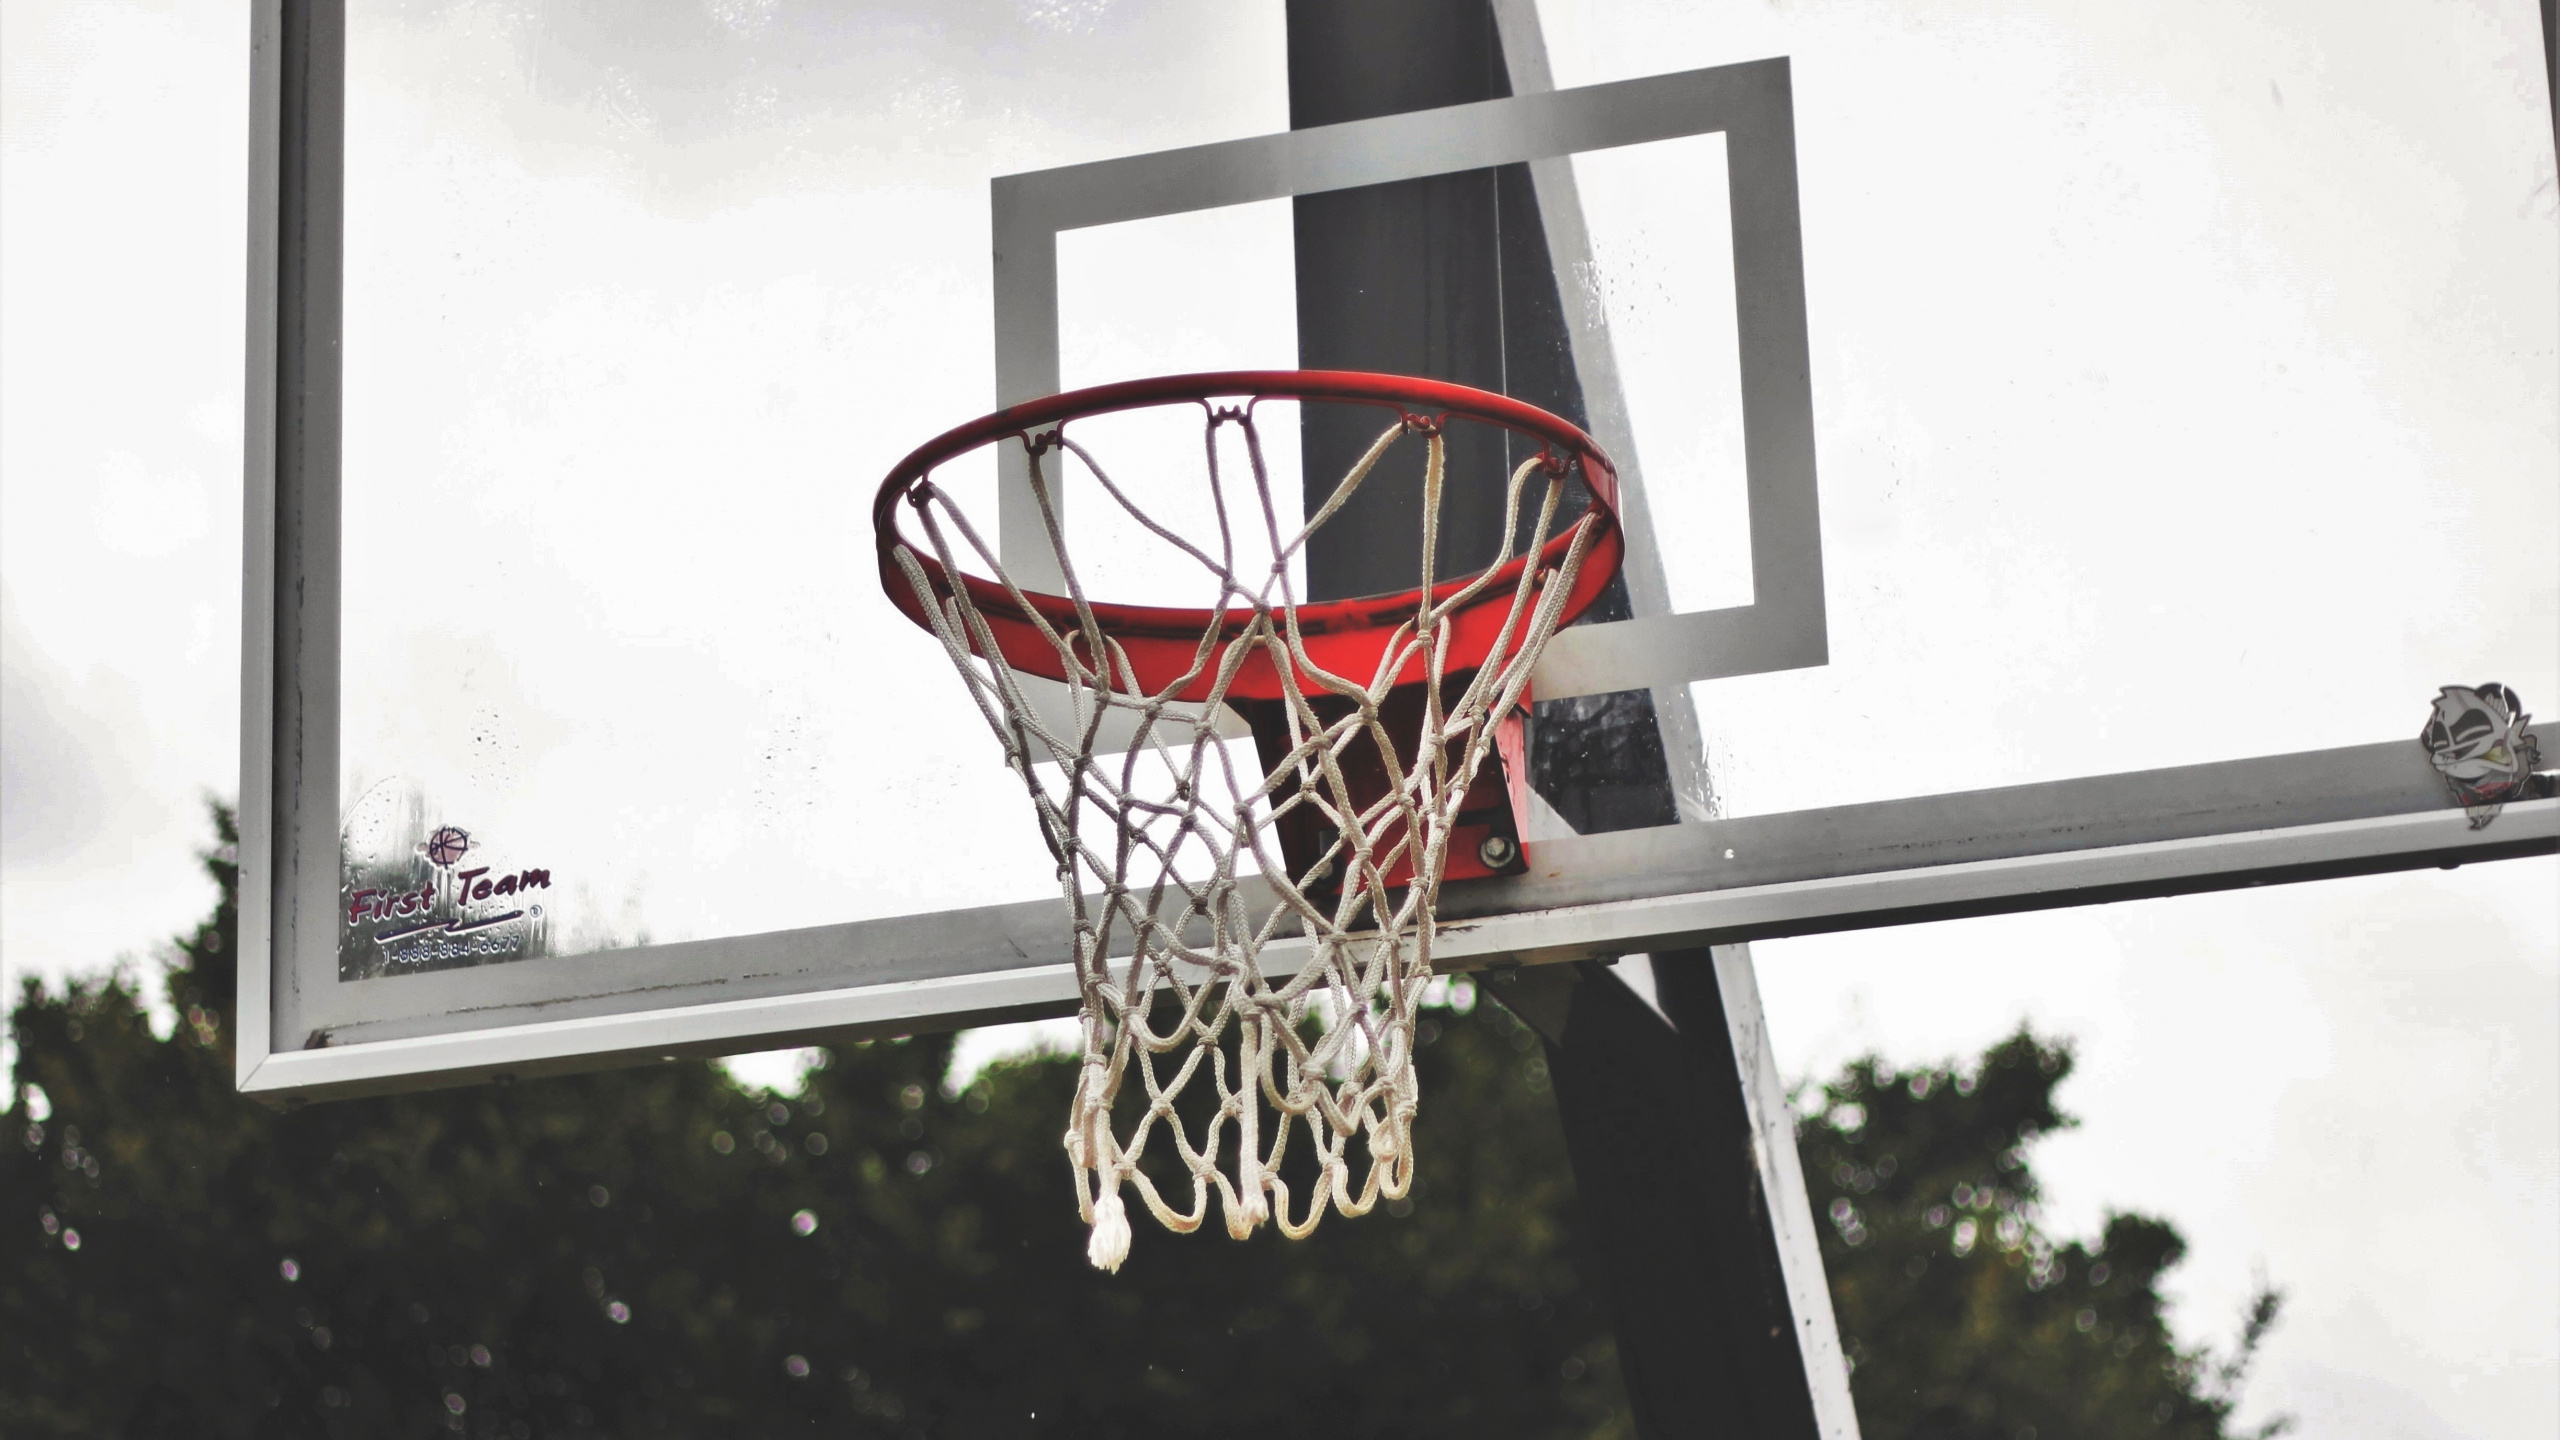 篮球, 篮板, 篮球场, 团队运动, 街头 壁纸 2560x1440 允许